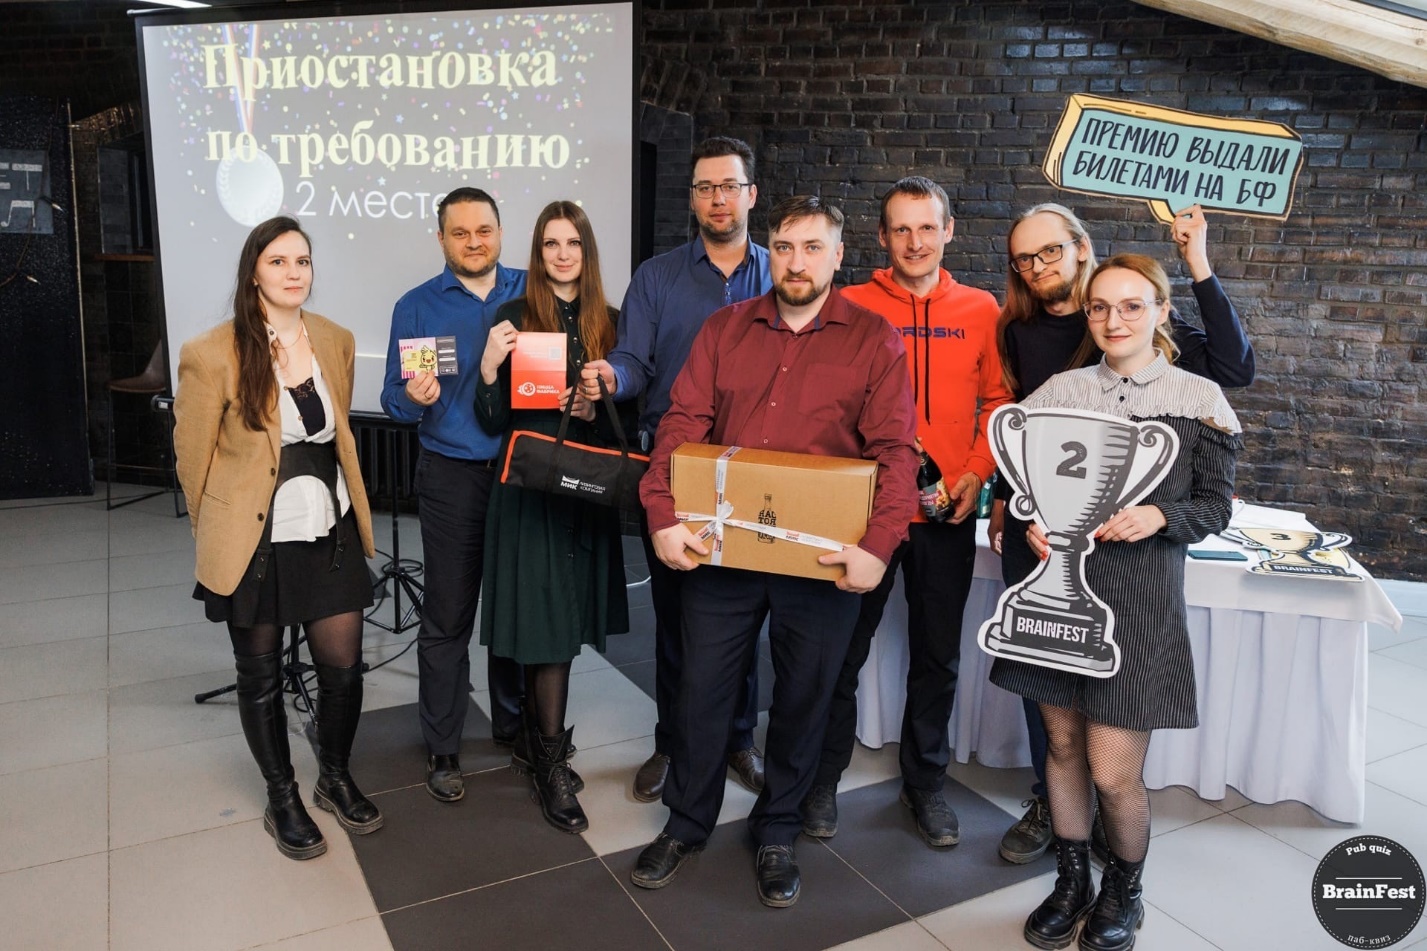 Команда Вологодского Росреестра заняла второе место в 1 этапе Кубка Предприятий интеллектуально-развлекательной игры Брейнфест.